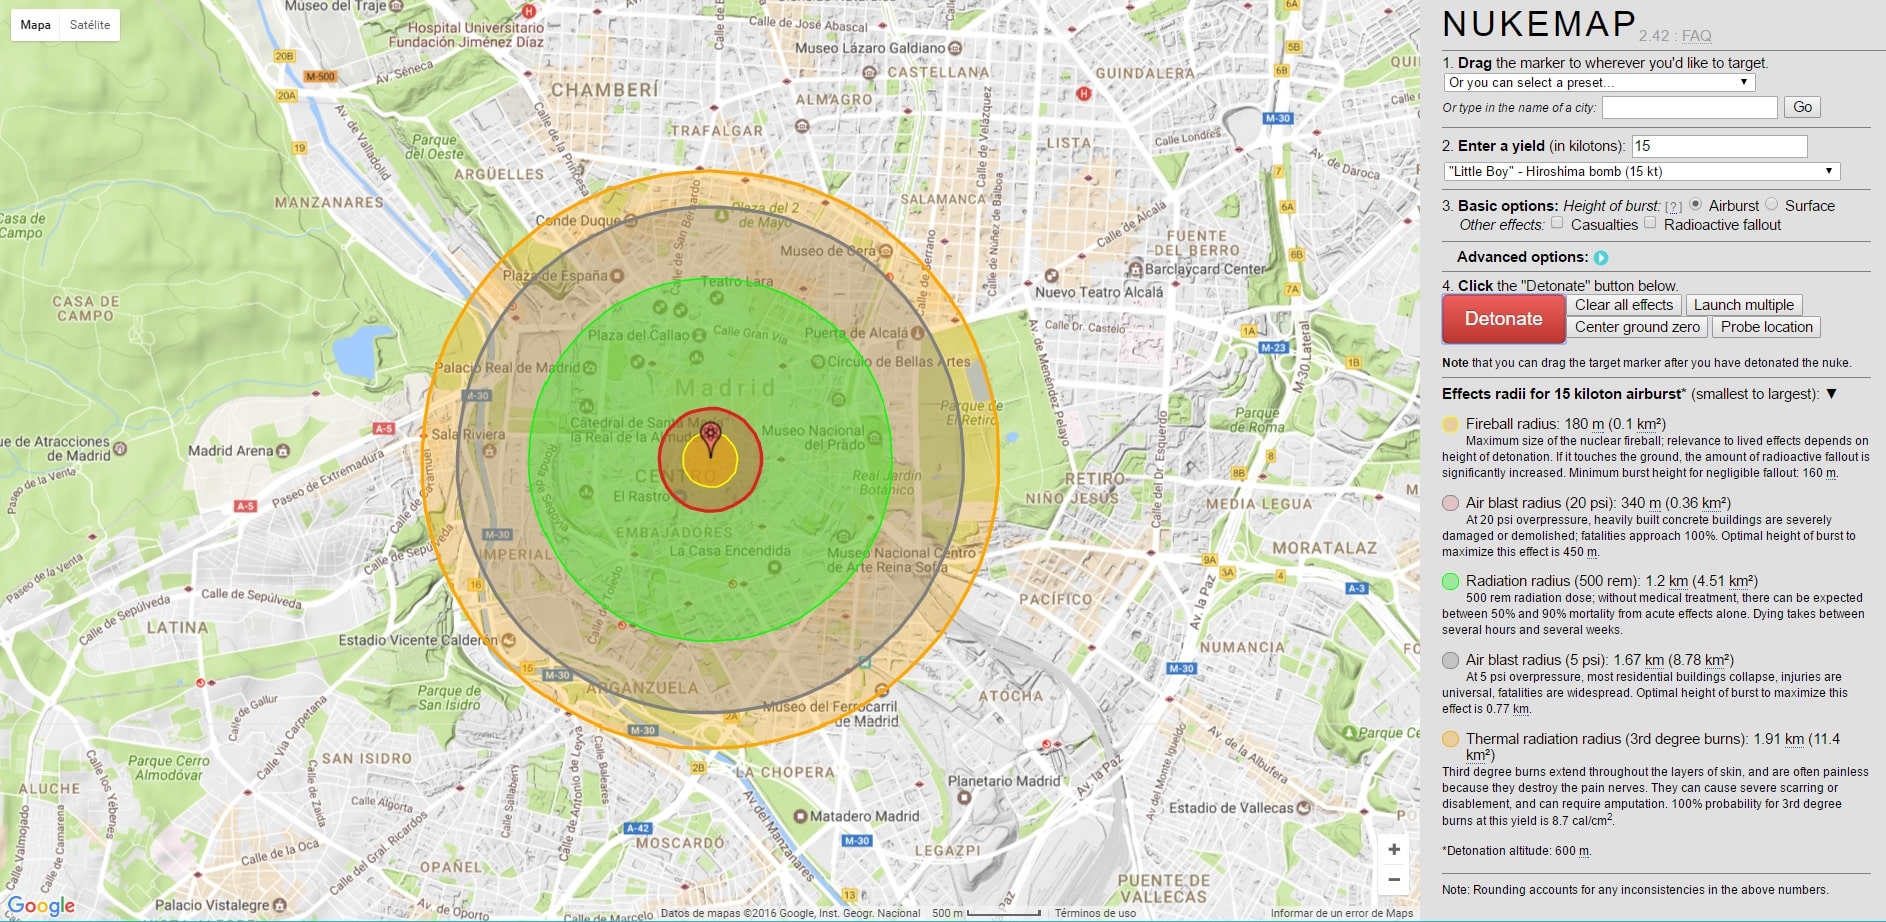 ¿Qué pasaría si cae una bomba nuclear en Madrid o Barcelona?